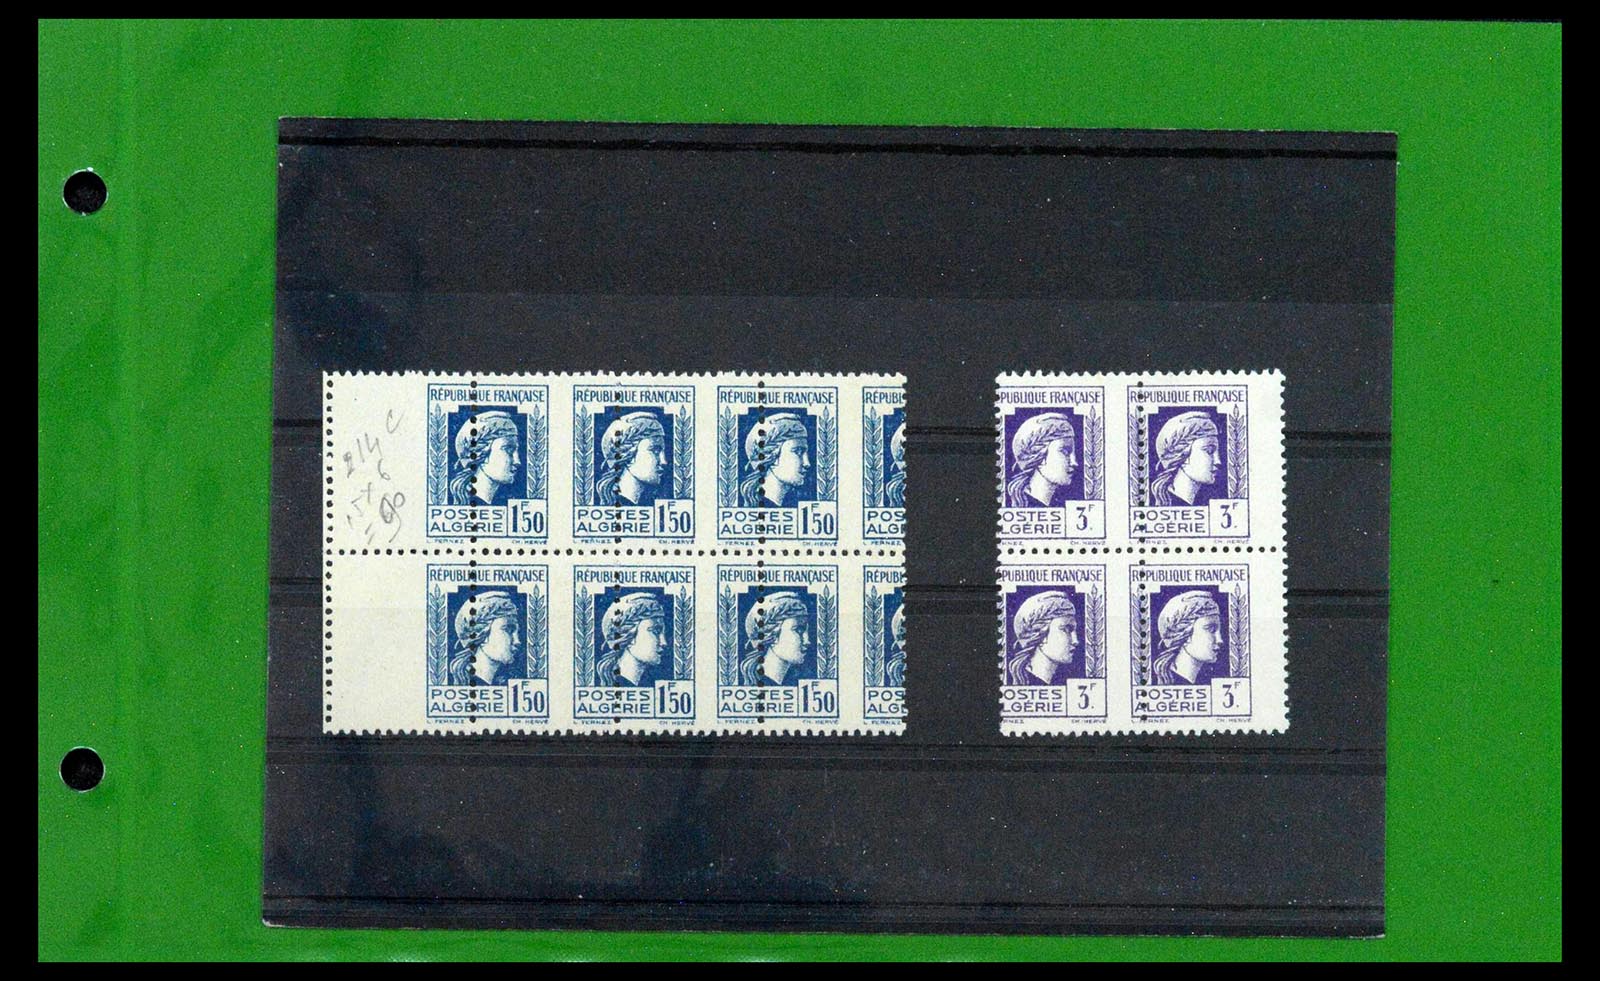 39114 0005 - Stamp collection 39114 Algeria varieties 1926-1950.